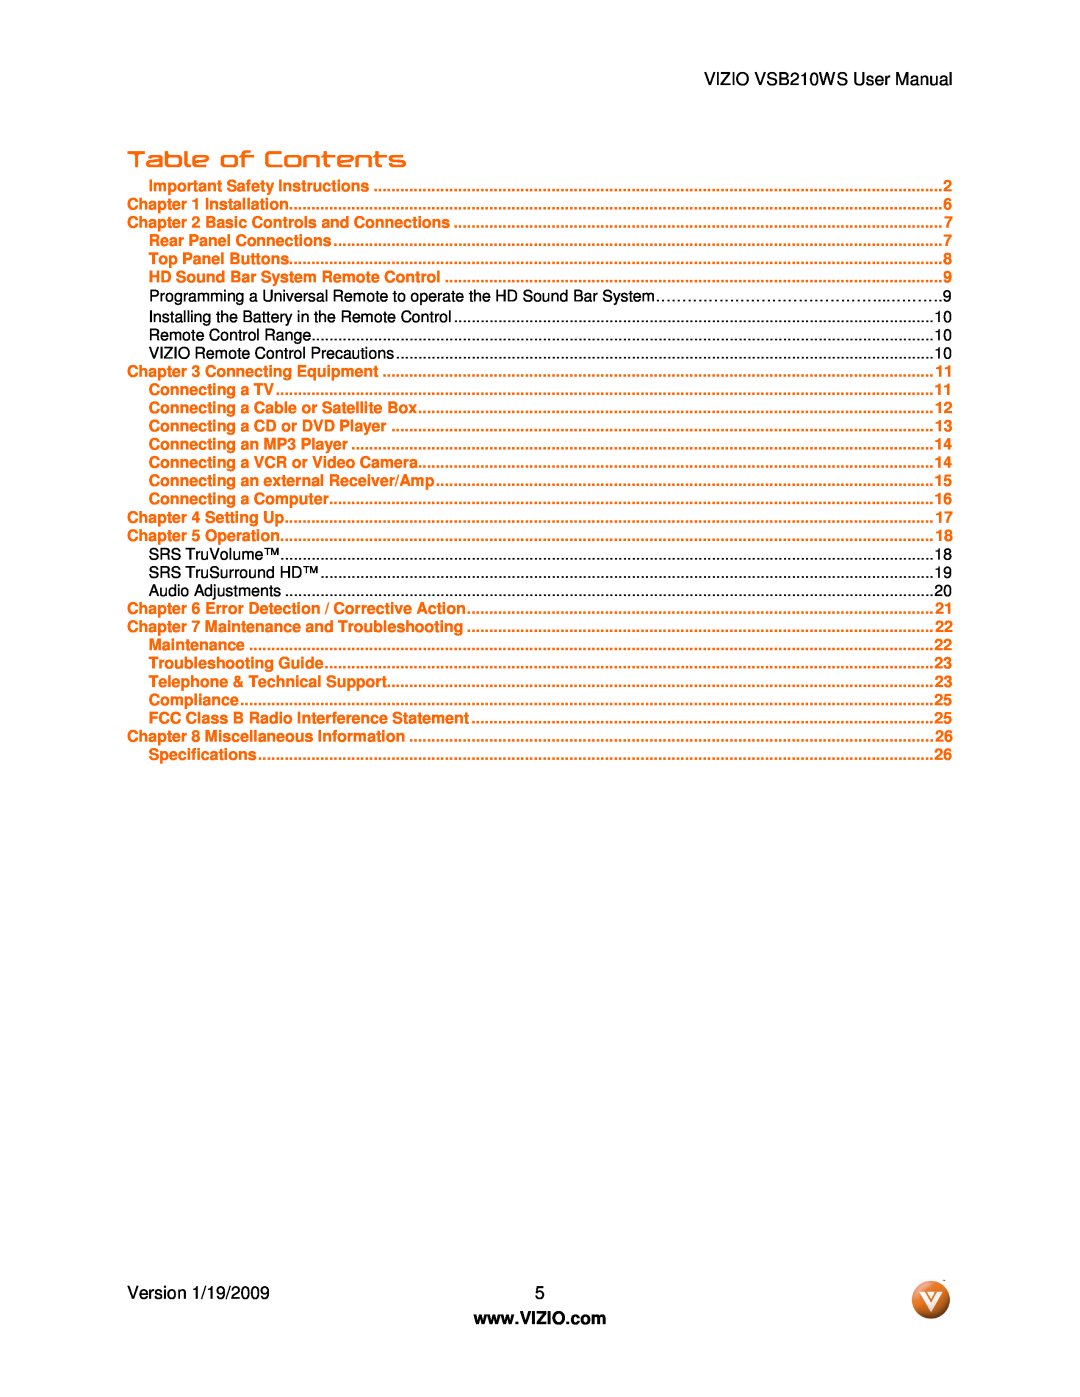 Vizio user manual Table of Contents, VIZIO VSB210WS User Manual 